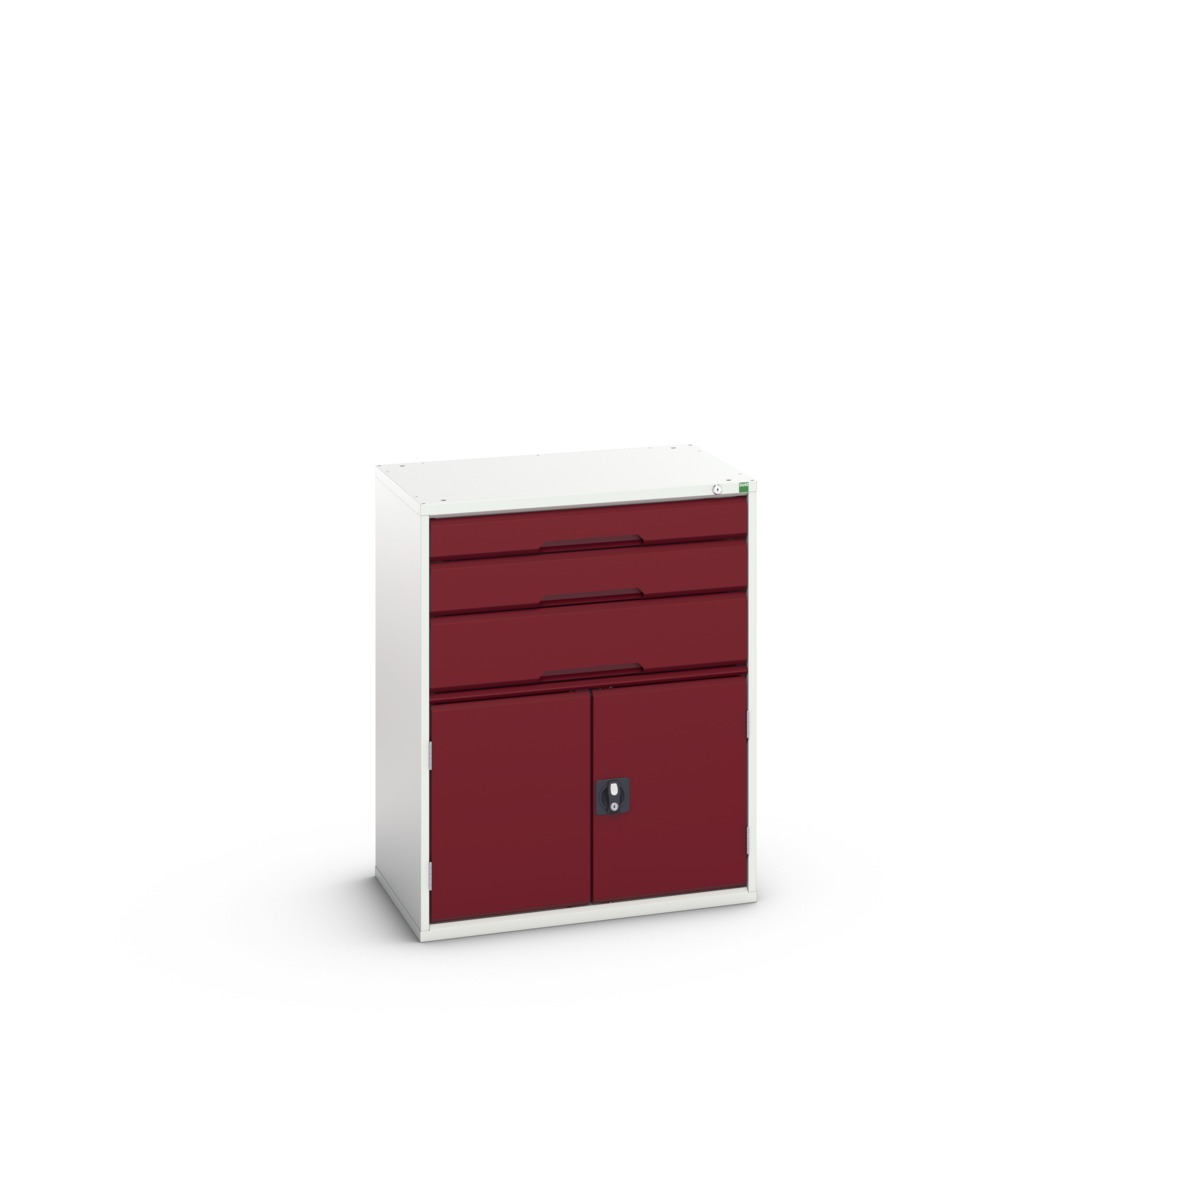 16925461.24 - verso drawer-door cabinet